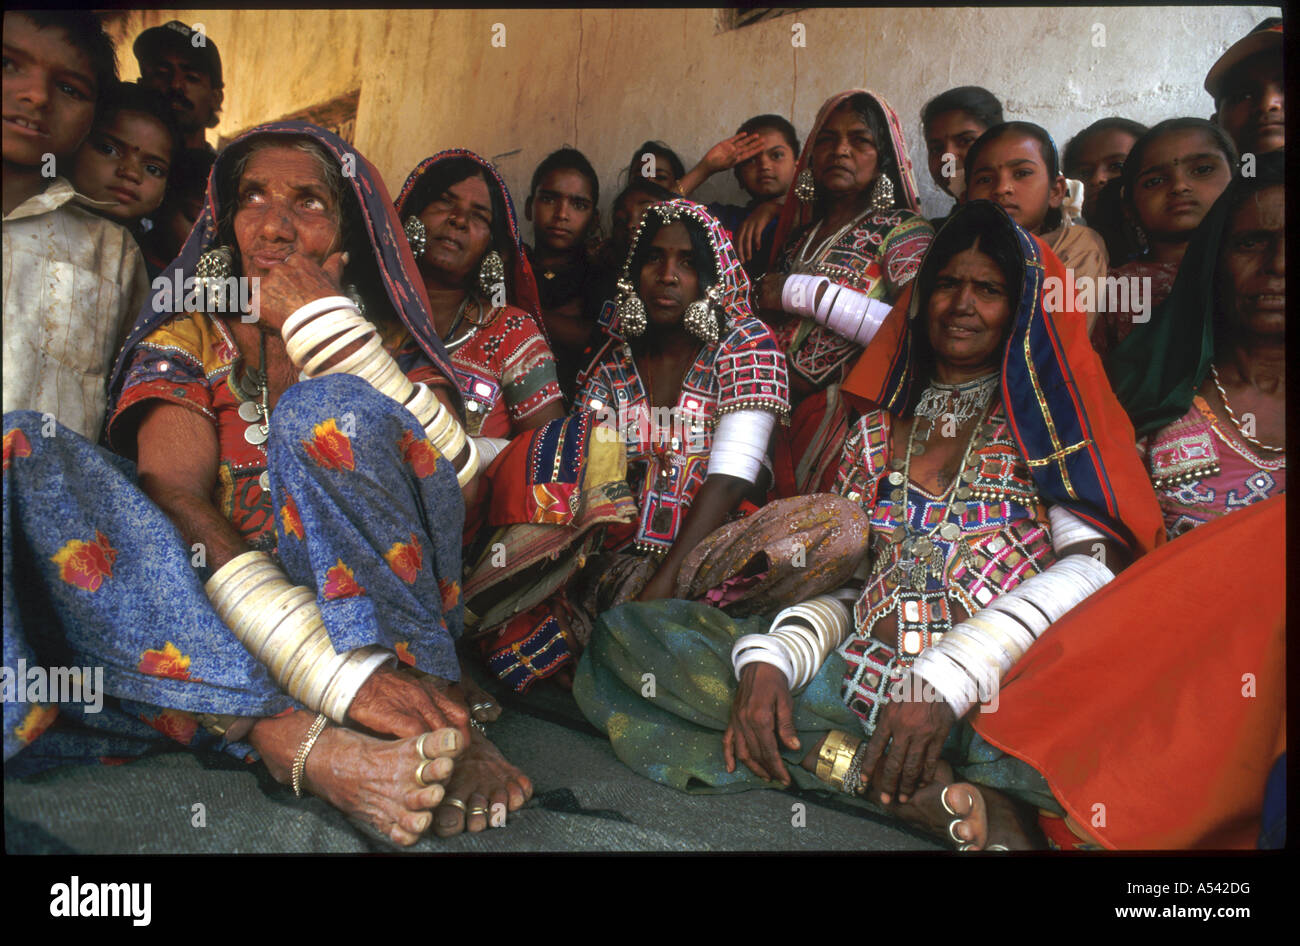 Painet ha2497 5333 Indien Stämme Lambada Stammesfrauen Andhra Pradesh Land sich entwickelnde Nation entwickelt wirtschaftlich Kultur. Stockfoto